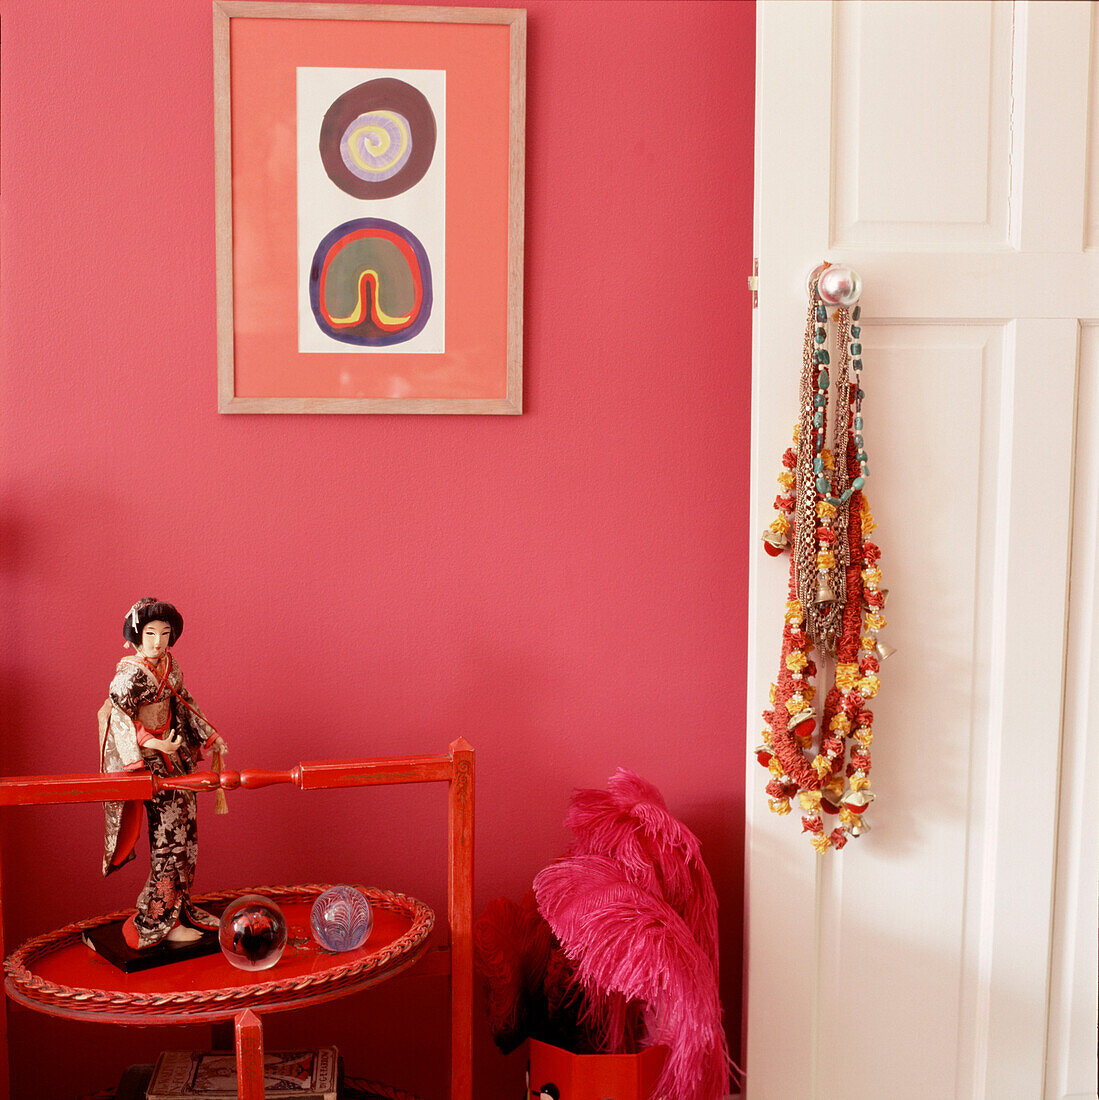 Eingang zum Schlafzimmer einer Frau mit Ornamenten und rosa Wänden